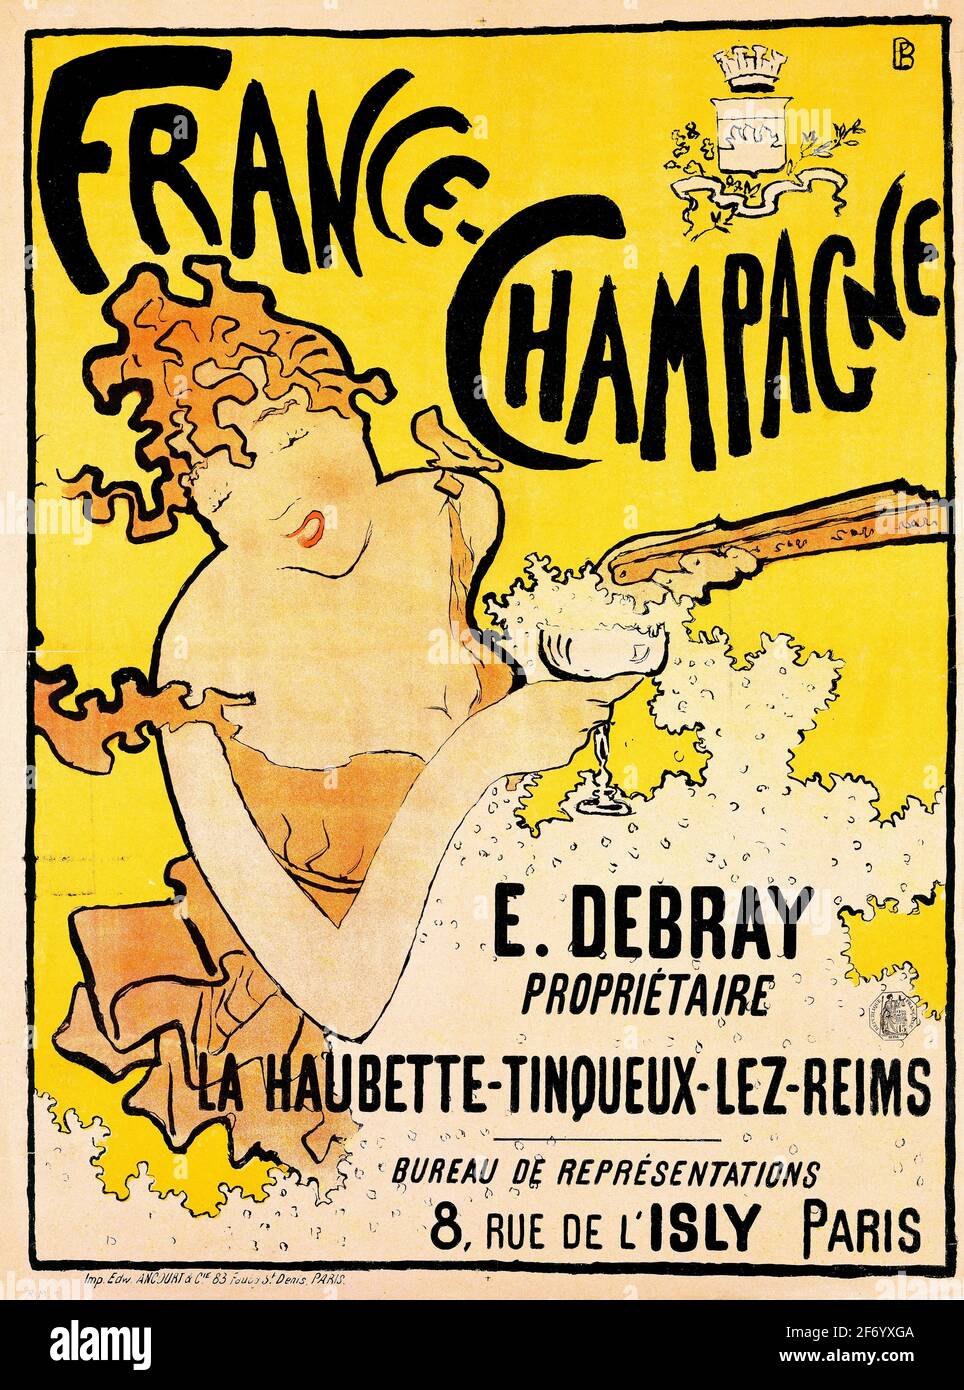 France Champagne, affiche de style Art nouveau de l'artiste français Pierre Bonnard (1867-1947), lithographie de couleur, c. 1889/91 Banque D'Images